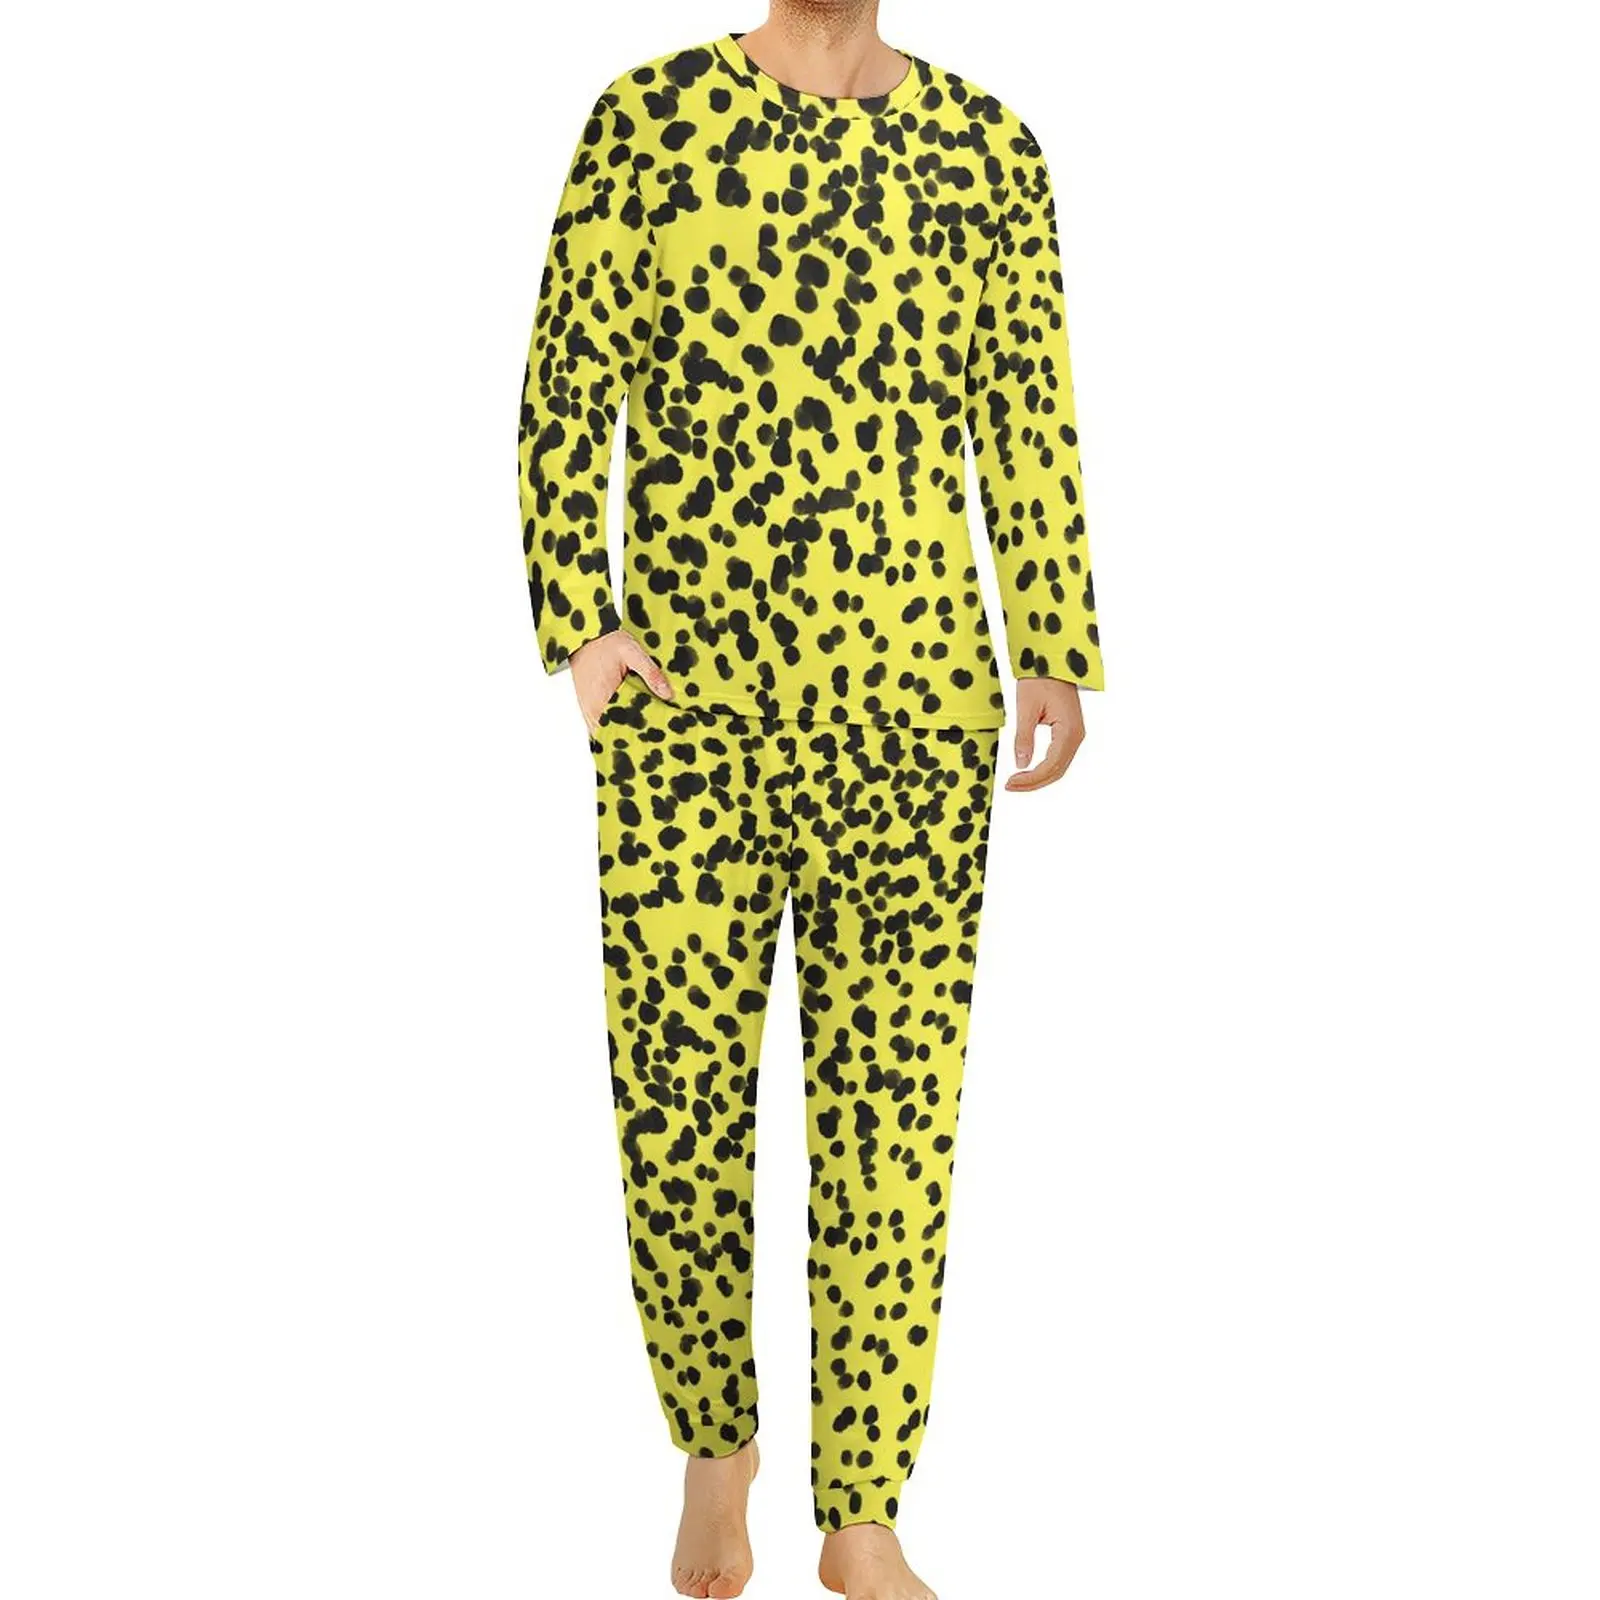 

Далматинская Пижама, Весенняя черная, желтая пижама в горошек, Мужская одежда для сна из 2 предметов, крутые пижамные комплекты большого размера с длинным рукавом и рисунком